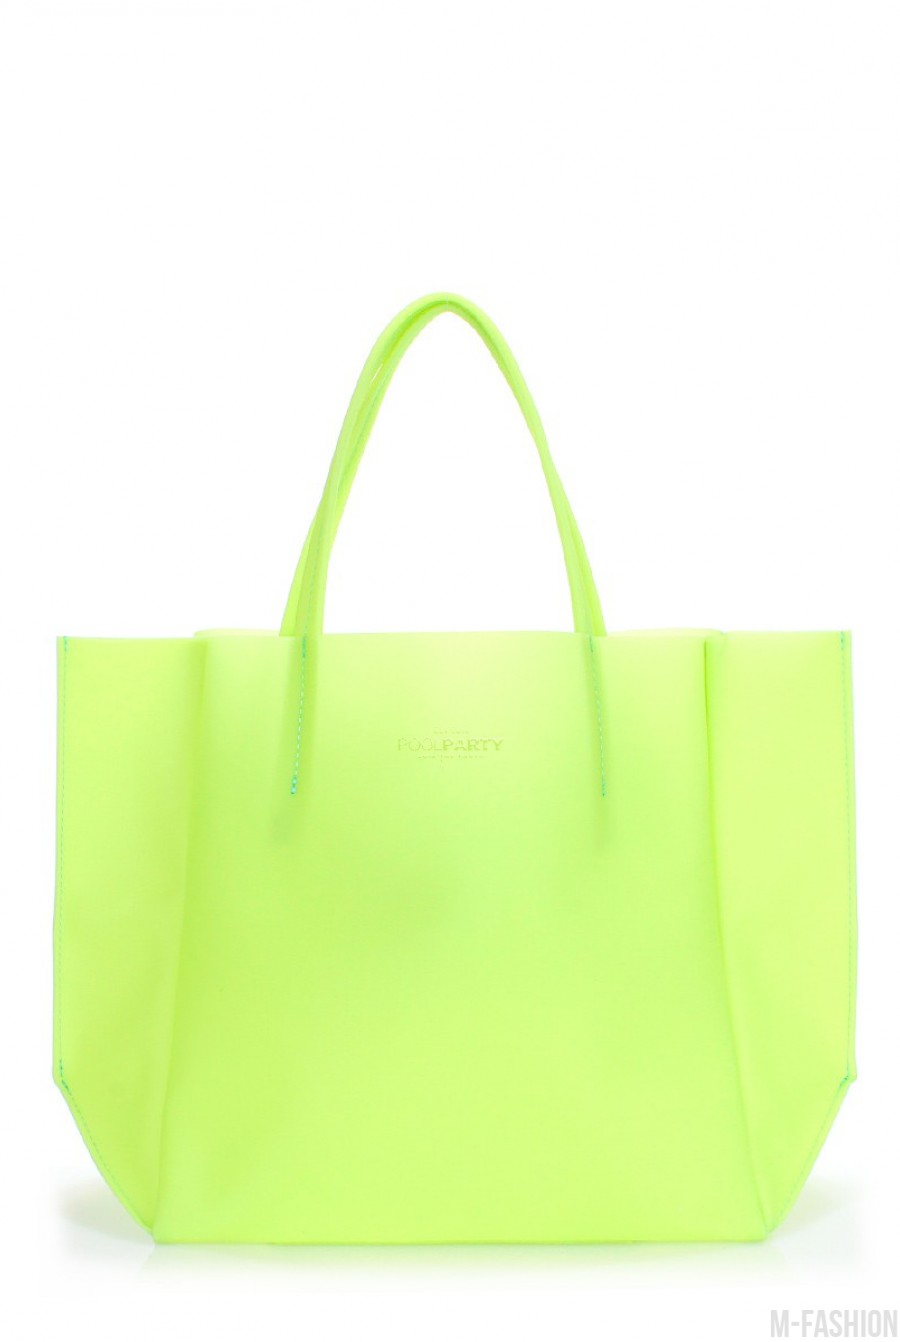 Пластиковая сумка-шоппинг Gossip зеленая - Фото 1